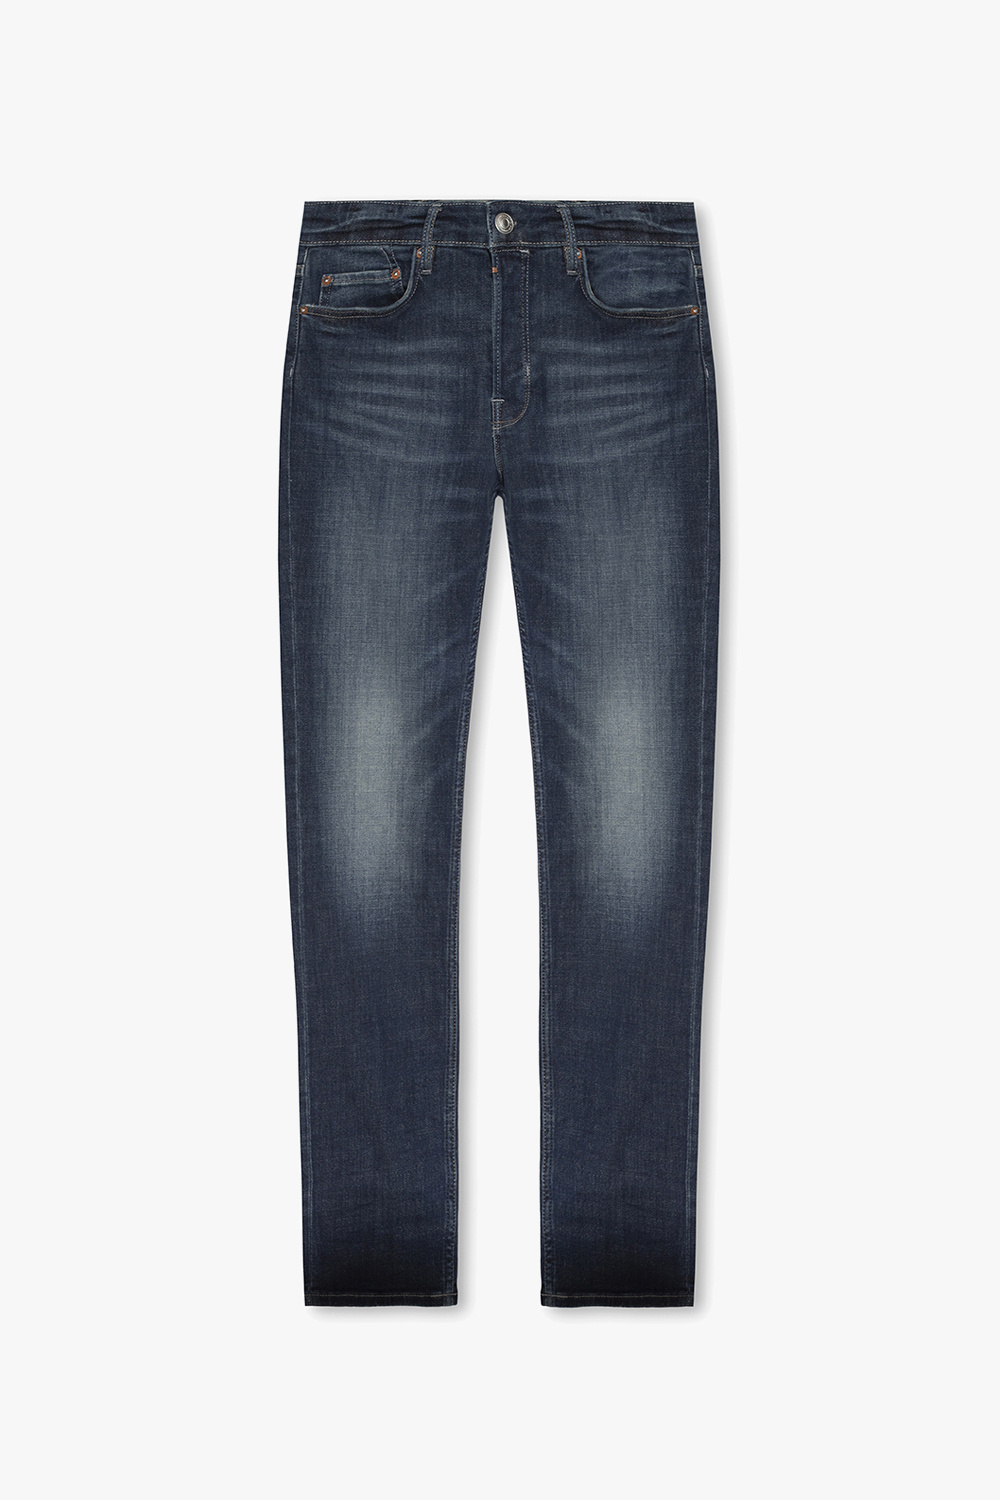 AllSaints ‘Rex’ slim-fit jeans